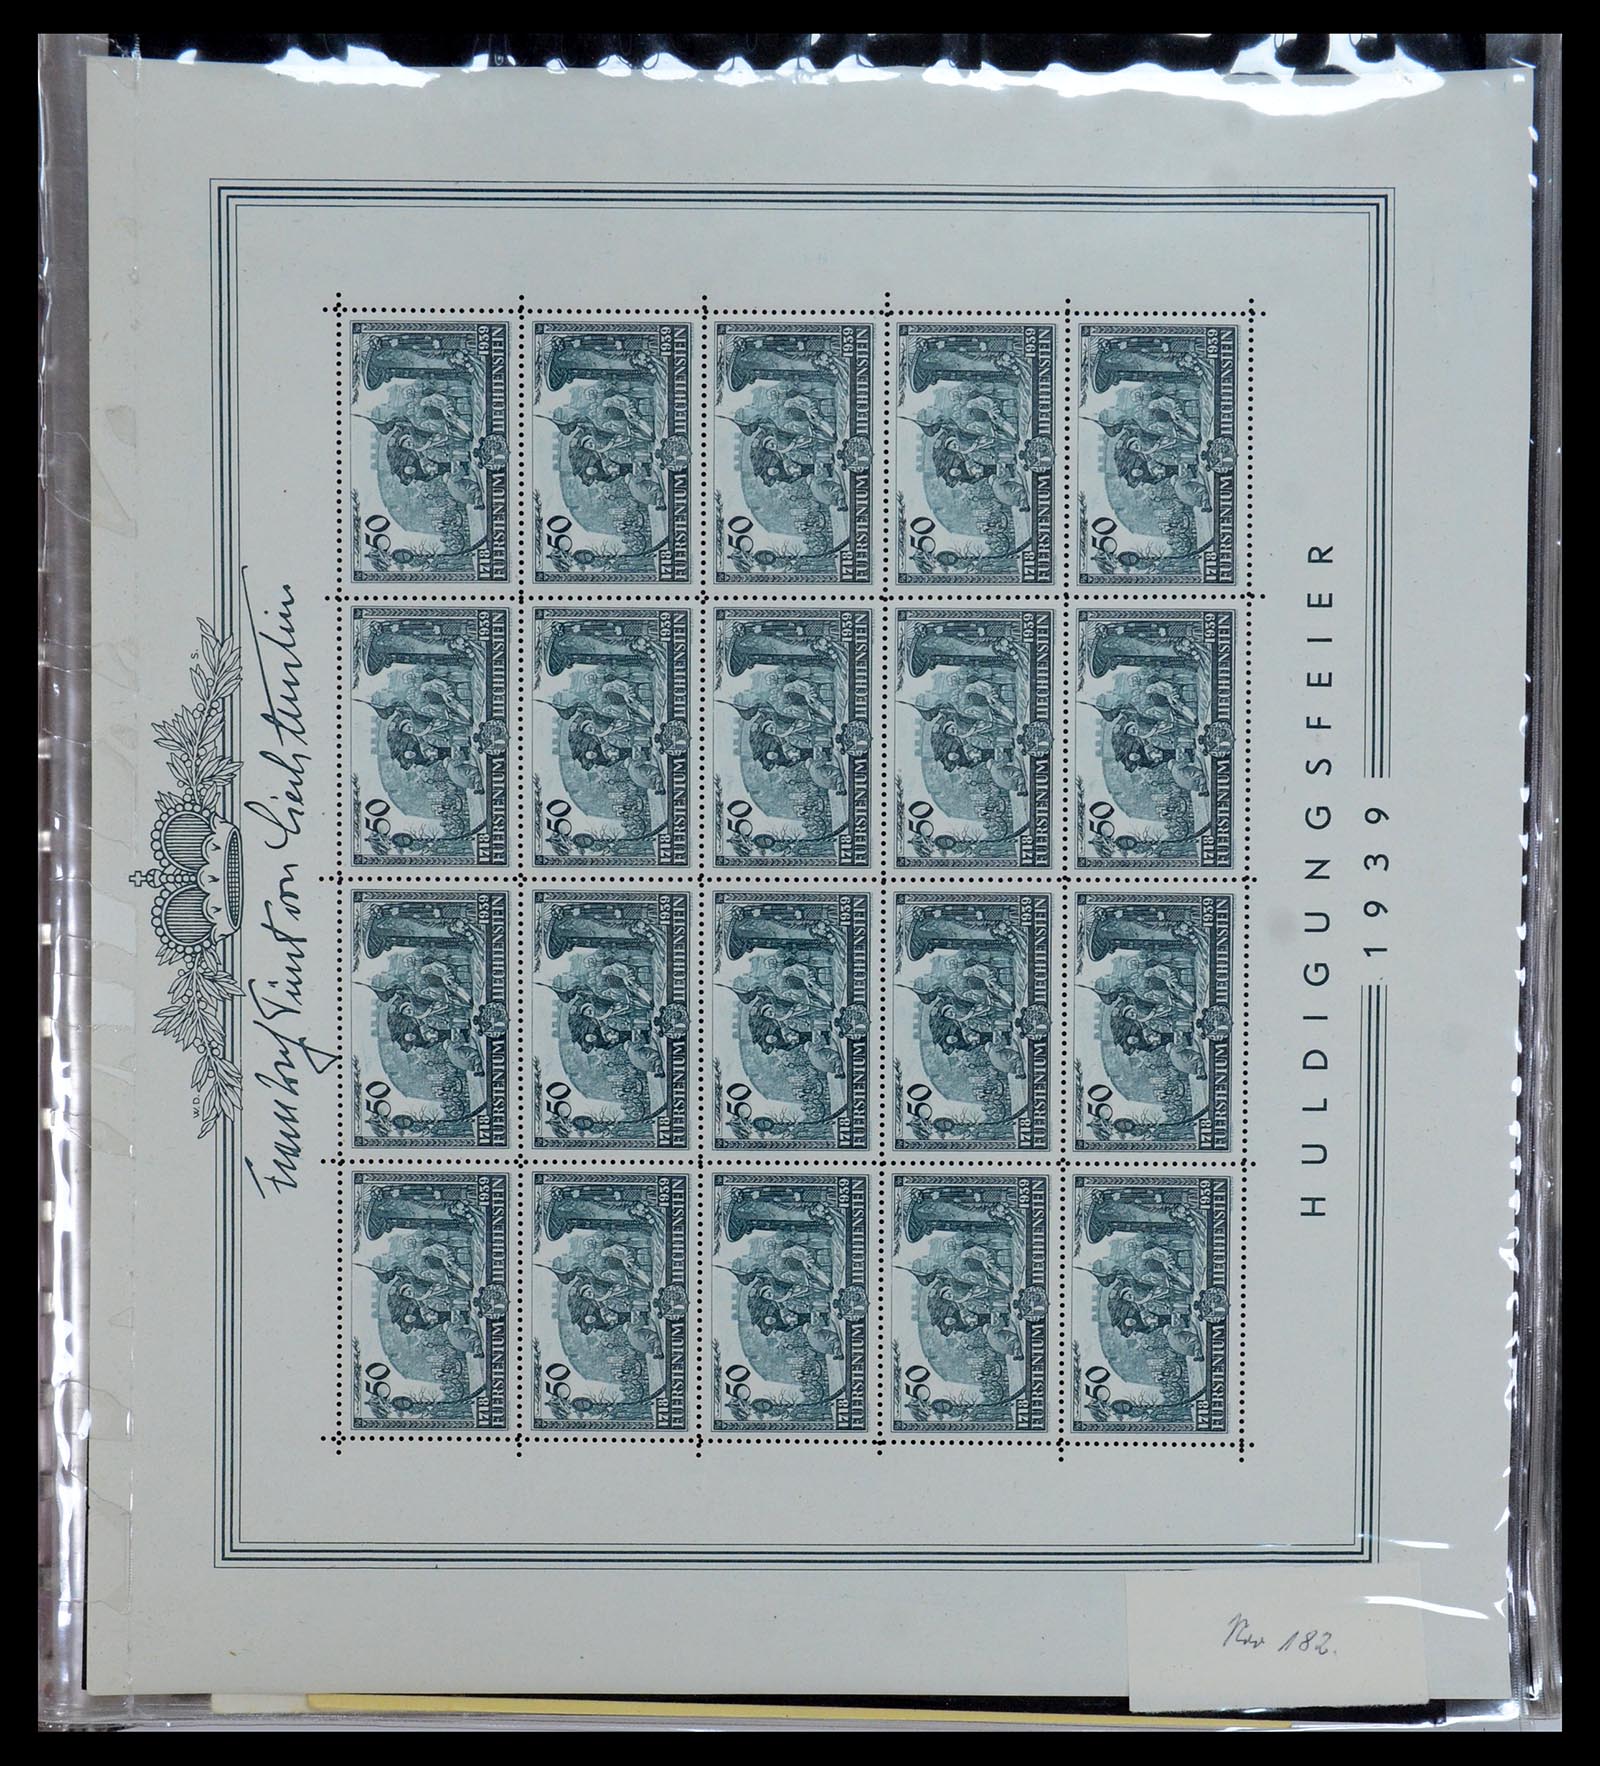 36280 005 - Stamp collection 36280 Liechtenstein souvenir sheets and sheetlets 1934-